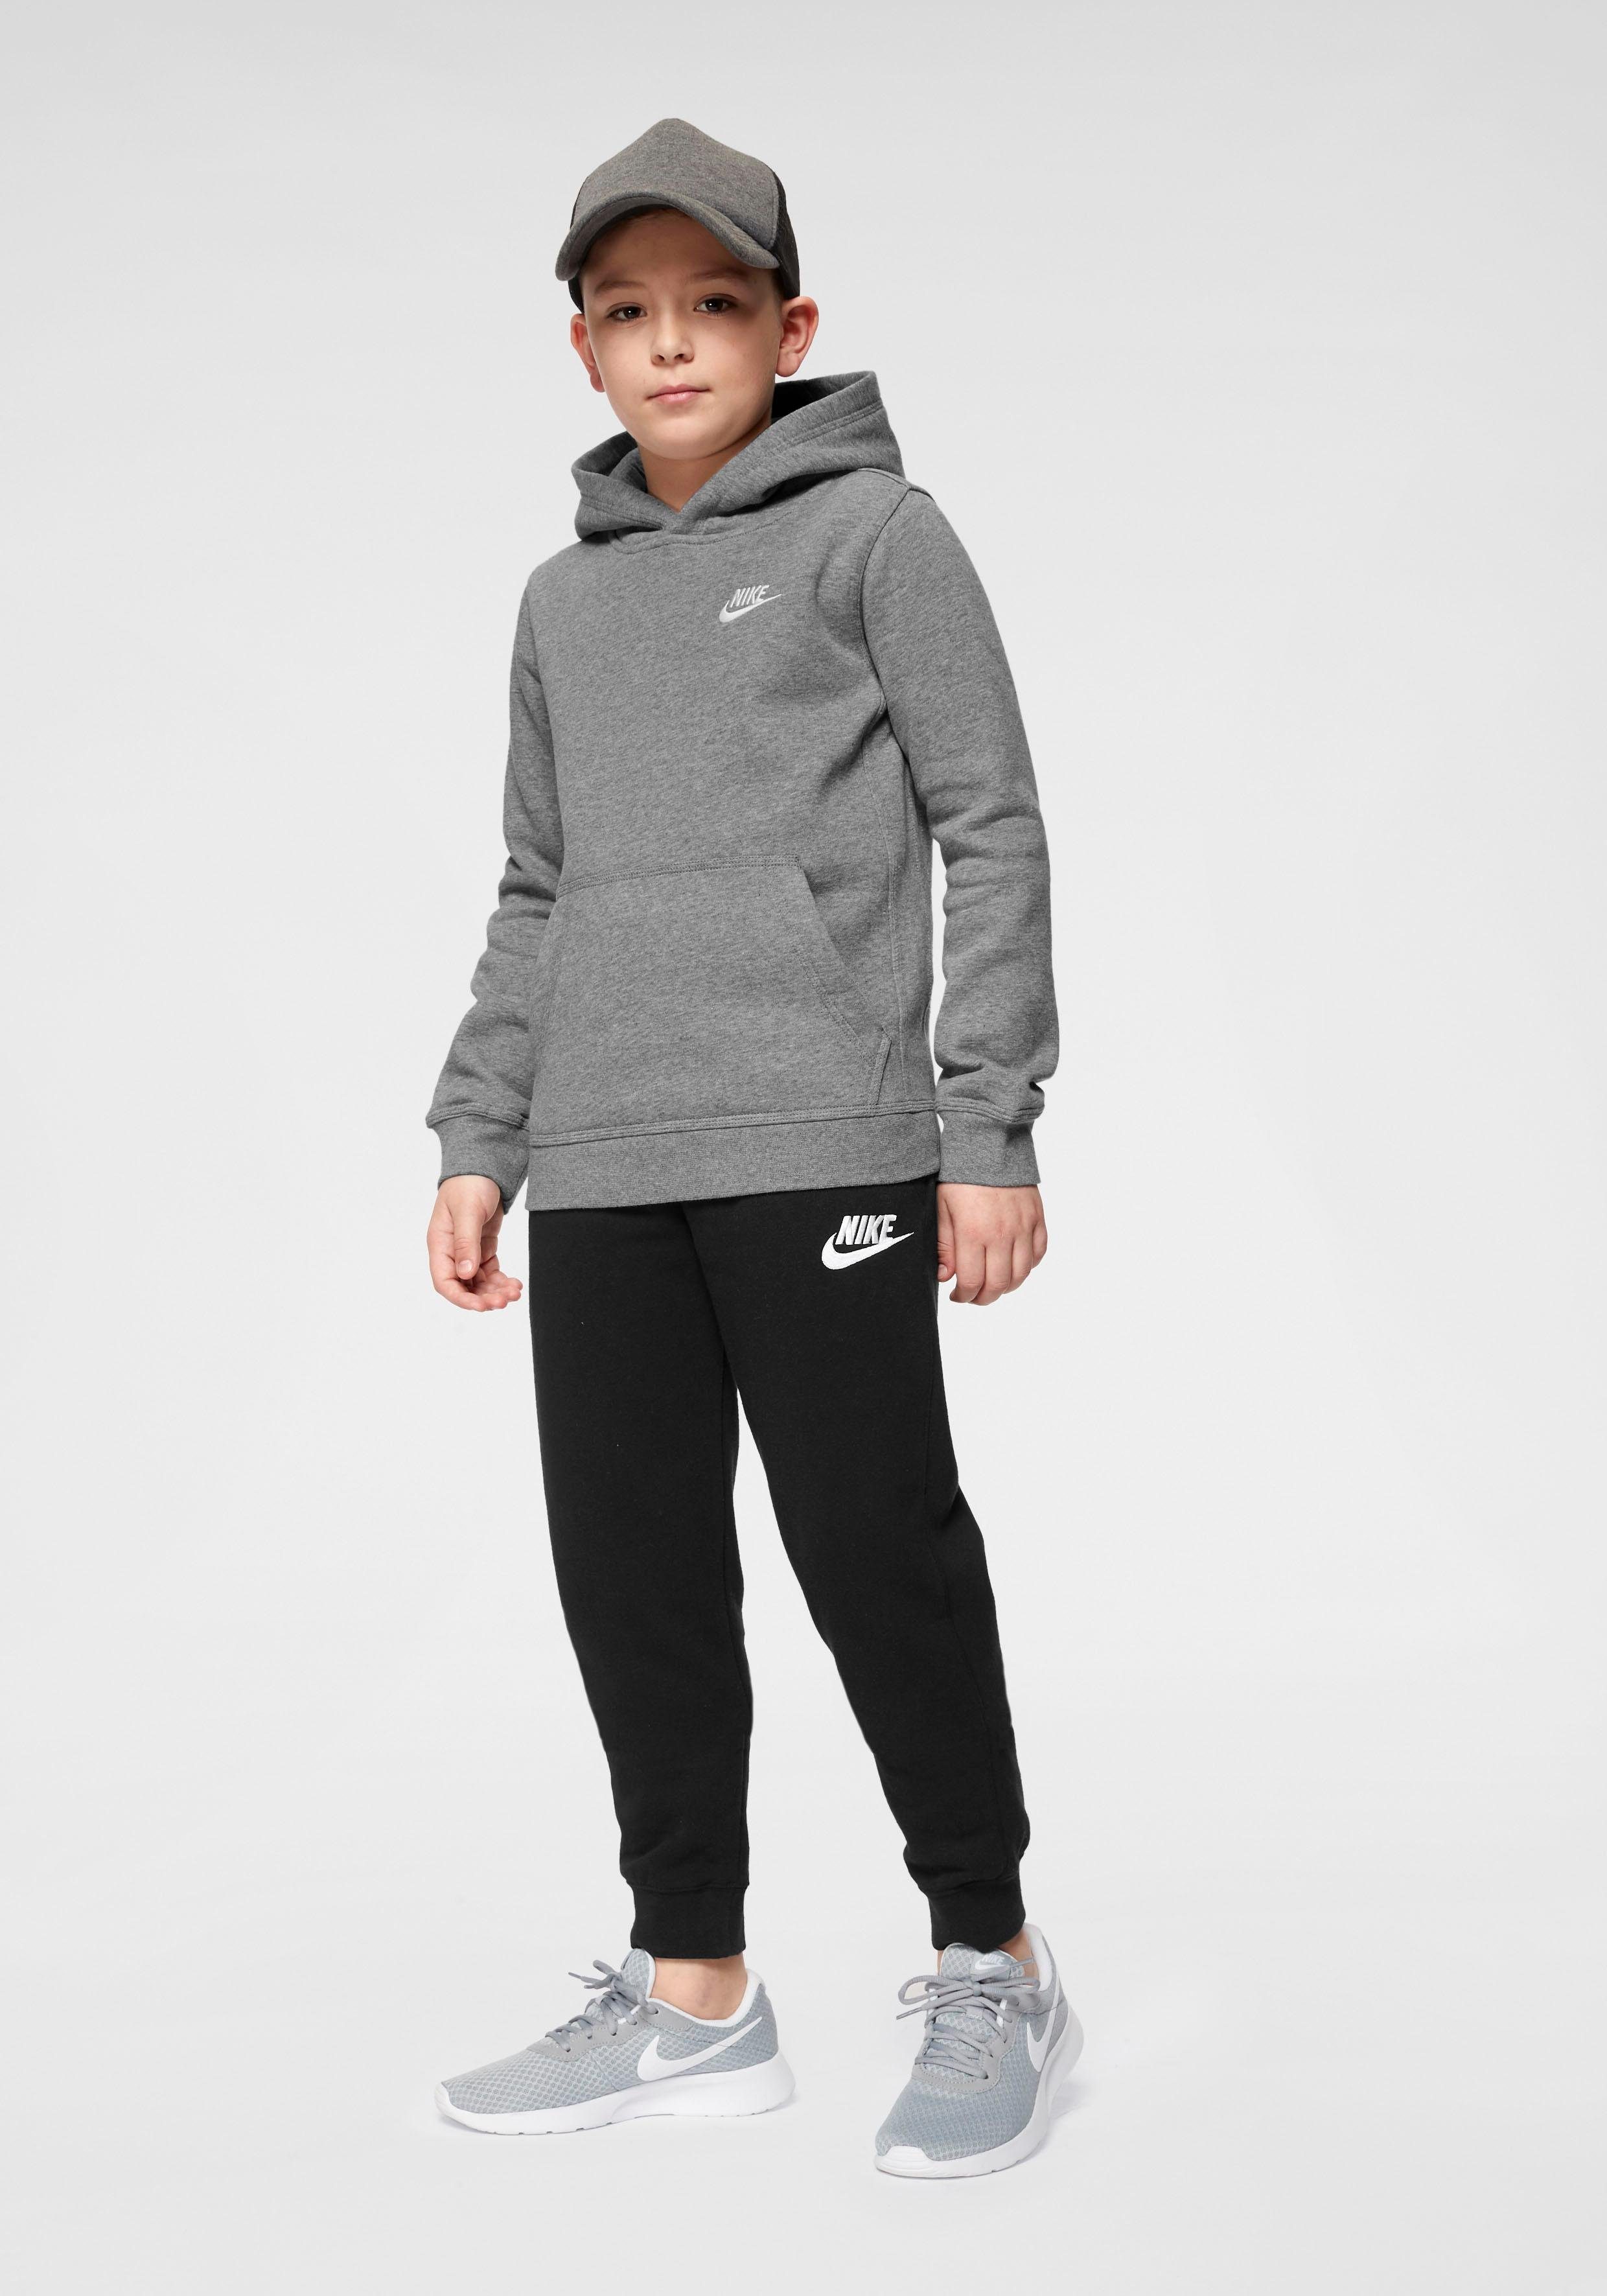 Nike Sportswear Hoodie grau-meliert Big Kapuzensweatshirt Kids' Club Pullover